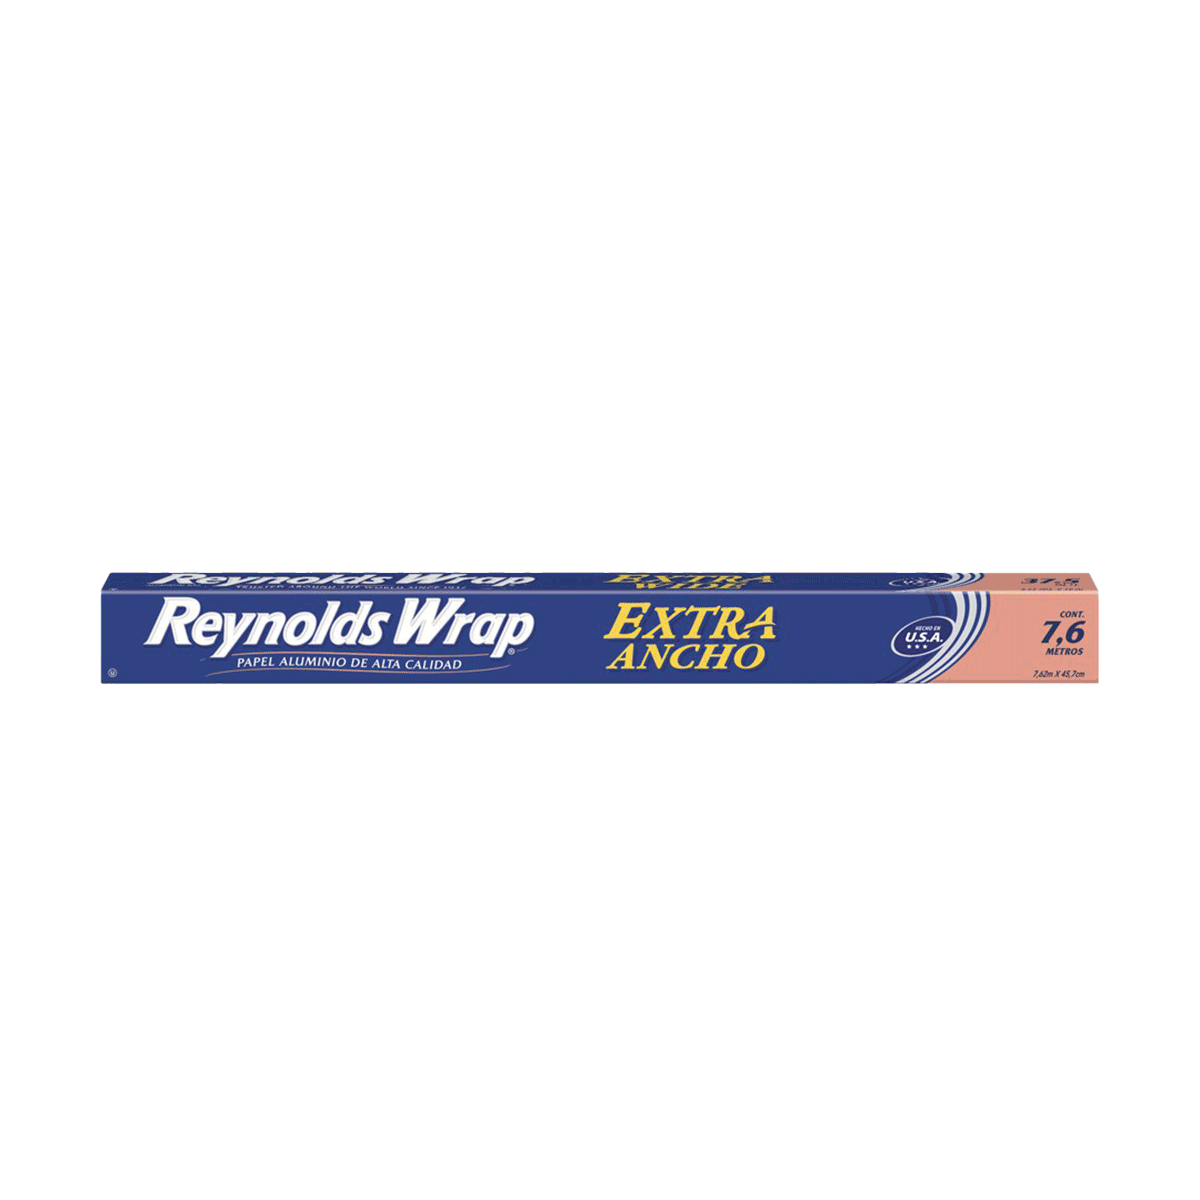 Papel de aluminio Reynolds Wrap alta calidad 1 rollo de 7.6 m x 30.4 cm